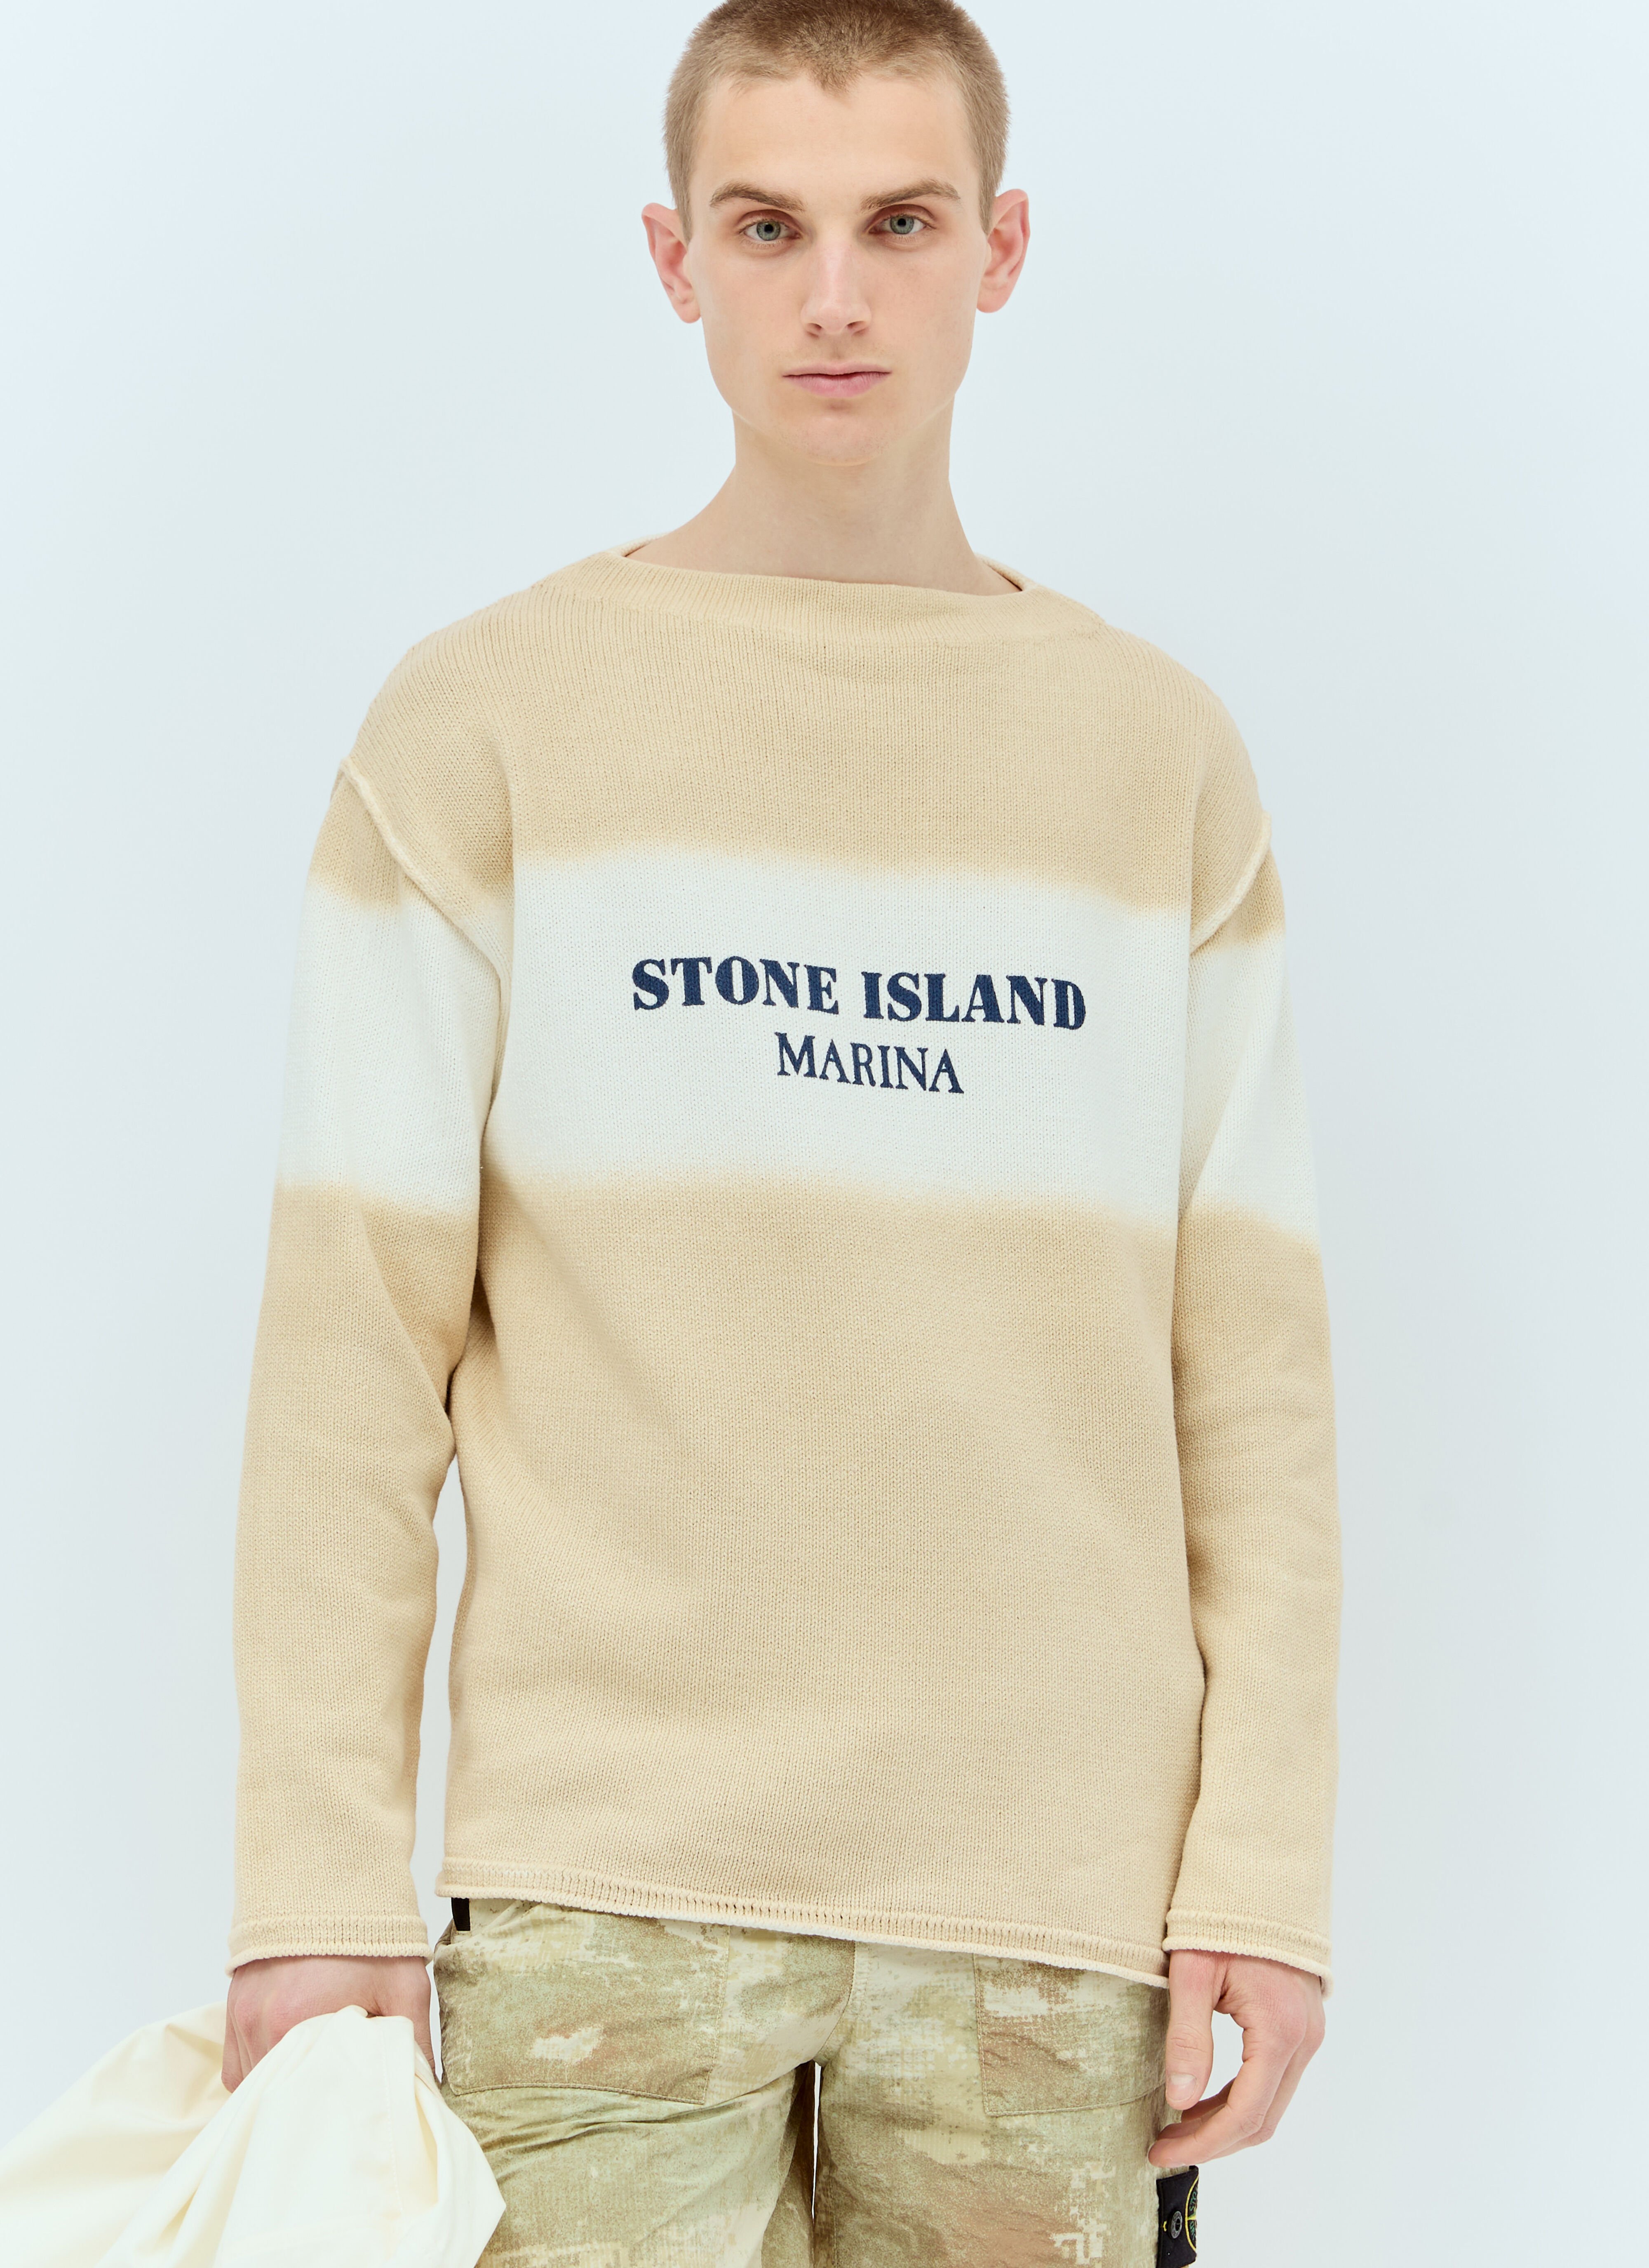 Stone Island Marina 渐变针织衫 灰色 sto0156026